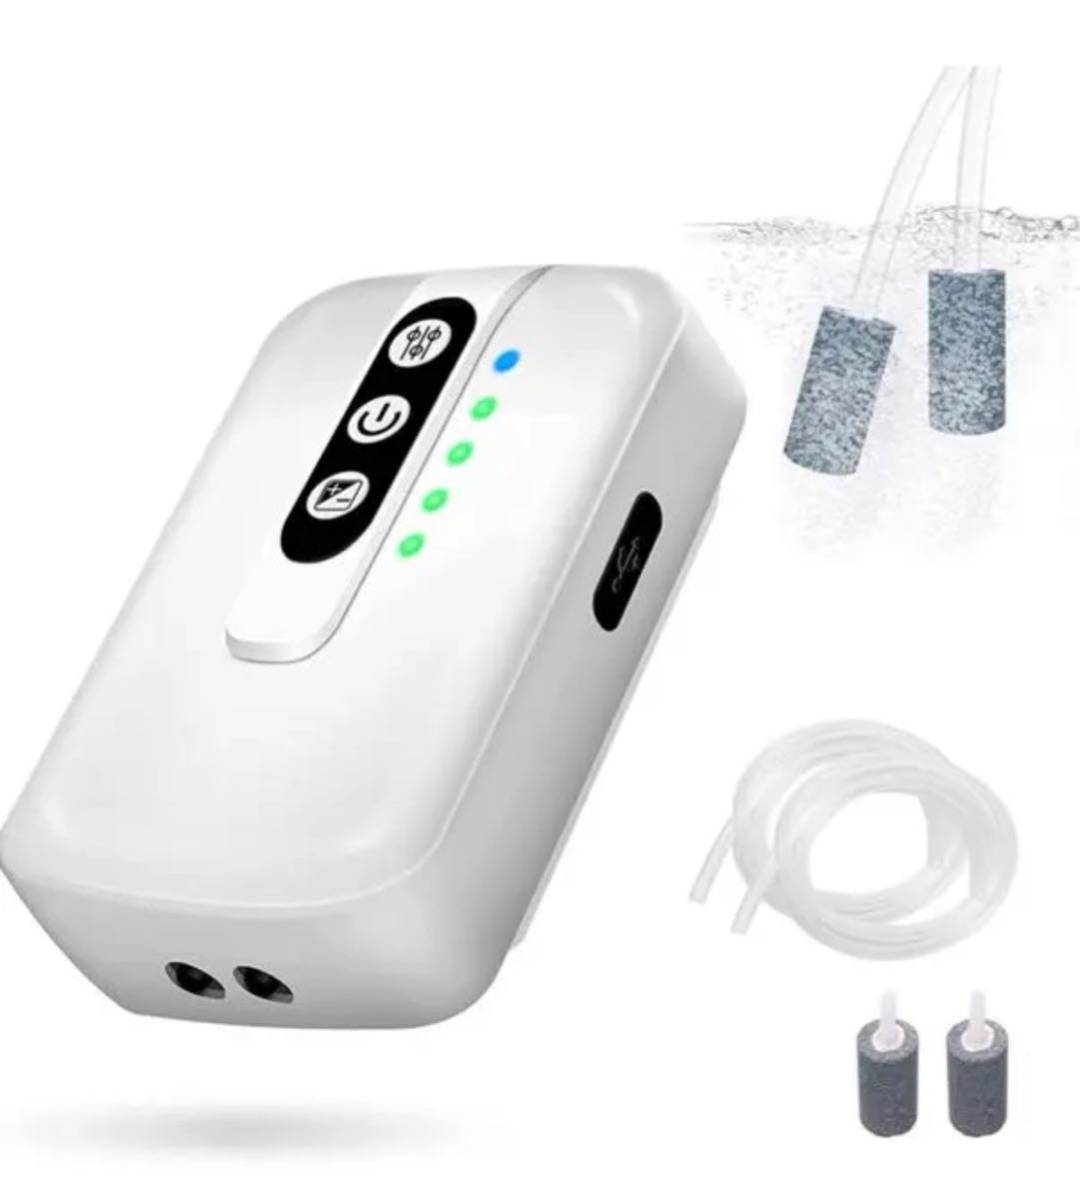 エアーポンプ 釣り エアーポンプ 水槽 ポンプ エアー吐出量可調節 携帯式 USB充電 電池内蔵 酸素提供ポンプ エアー吐出量可調節 携帯の画像1